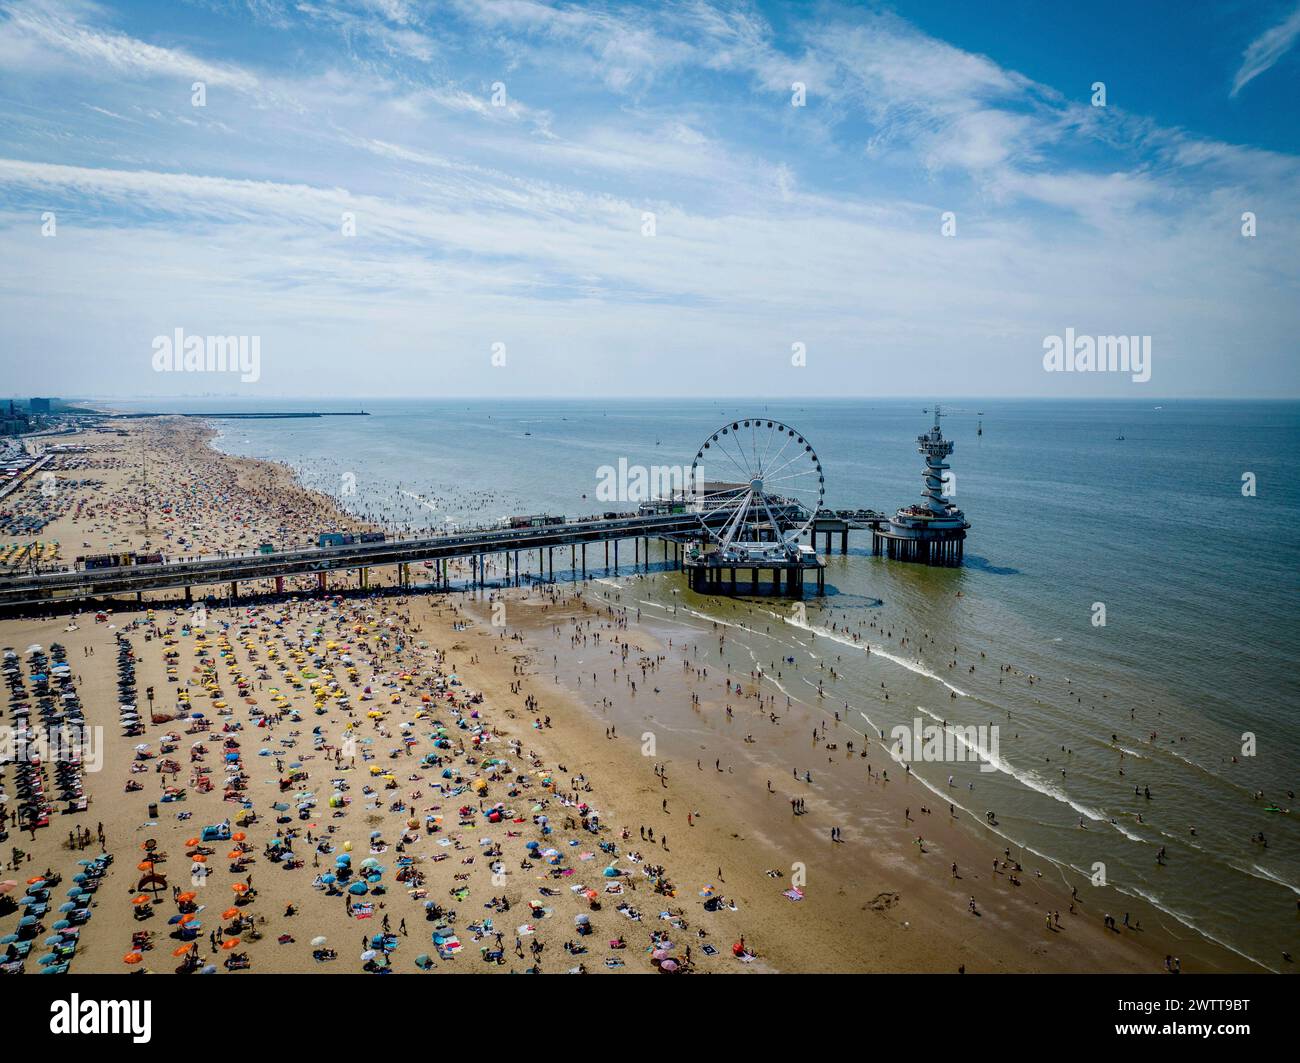 Une journée de plage animée avec une vue panoramique sur une jetée et une grande roue Banque D'Images